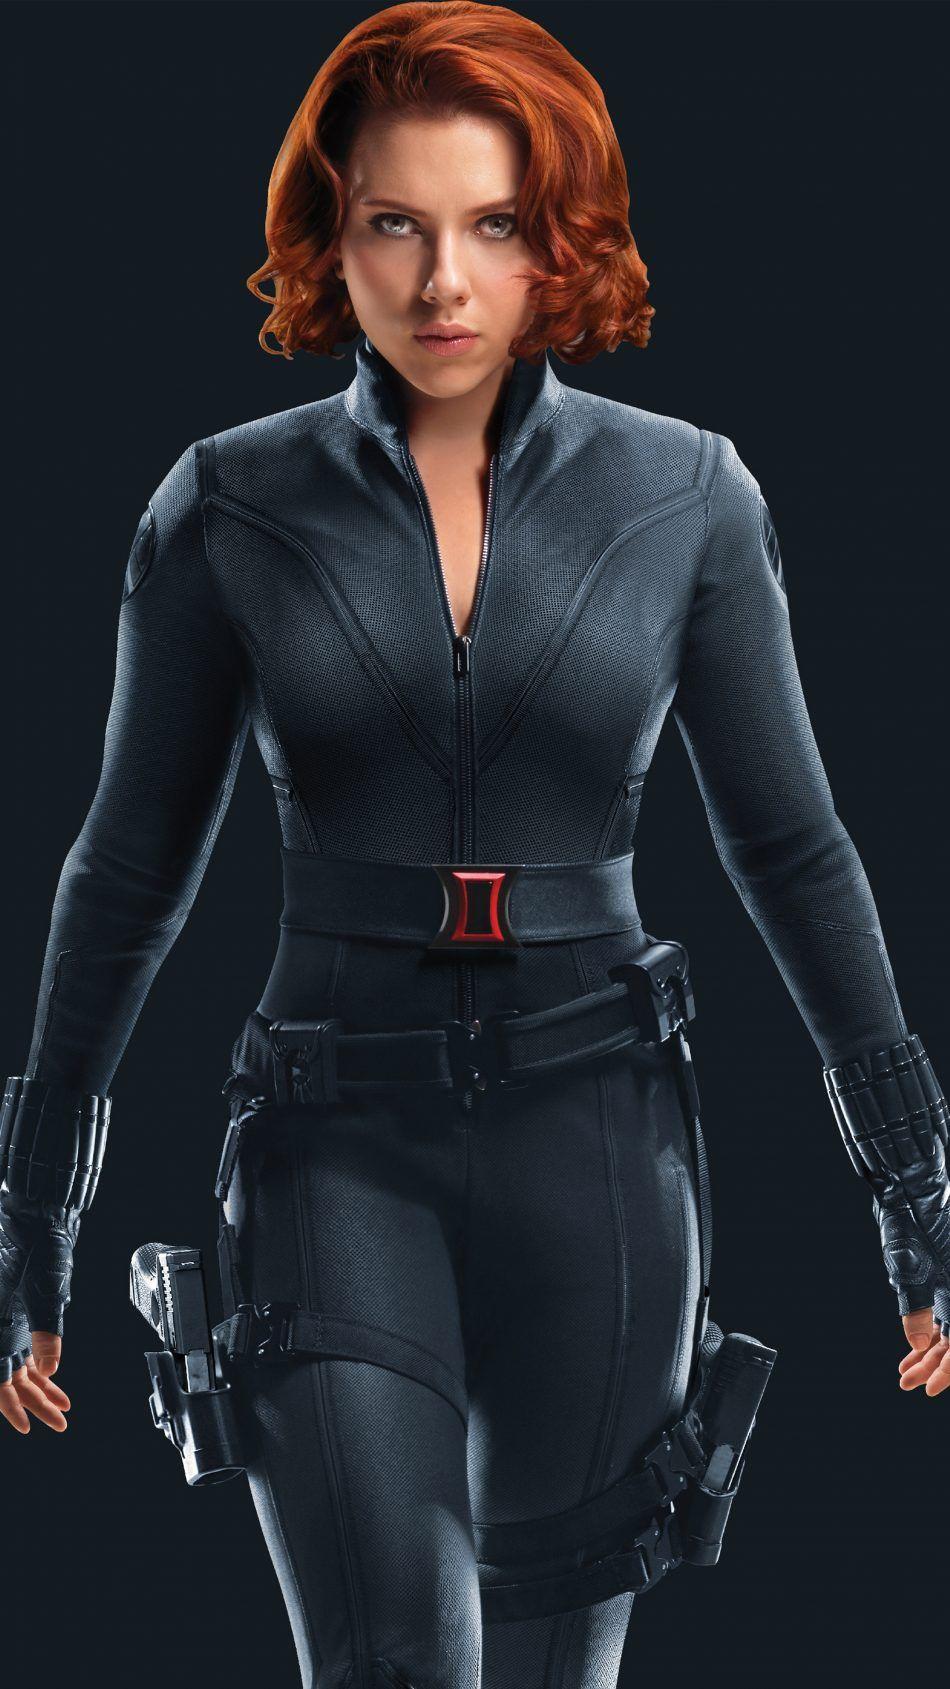 Black Widow Scarlett Johansson Superhero. Black widow scarlett